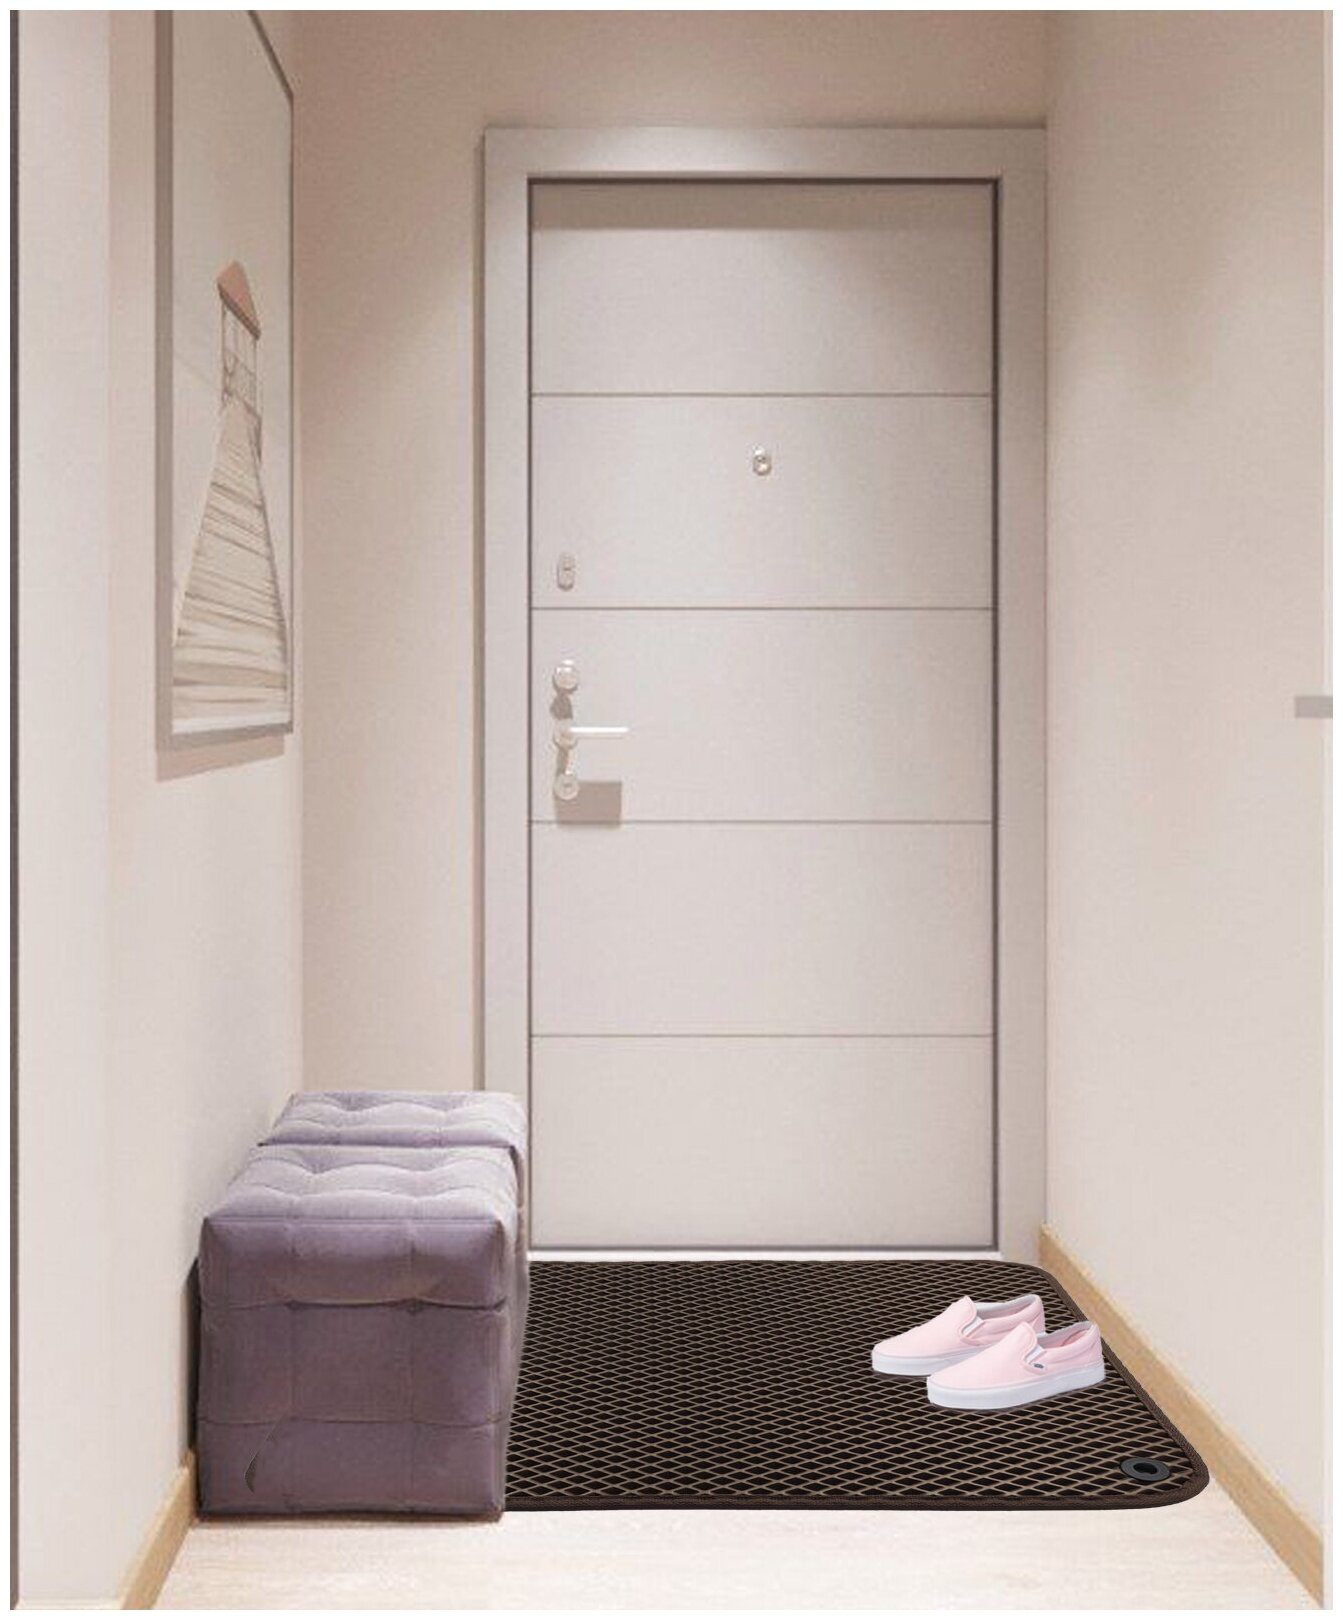 Грязезащитный придверный резиновый коврик в прихожую из EVA для обуви, для ванной, туалета, 0.3 х 0.45 м, коричневый ромб - фотография № 2